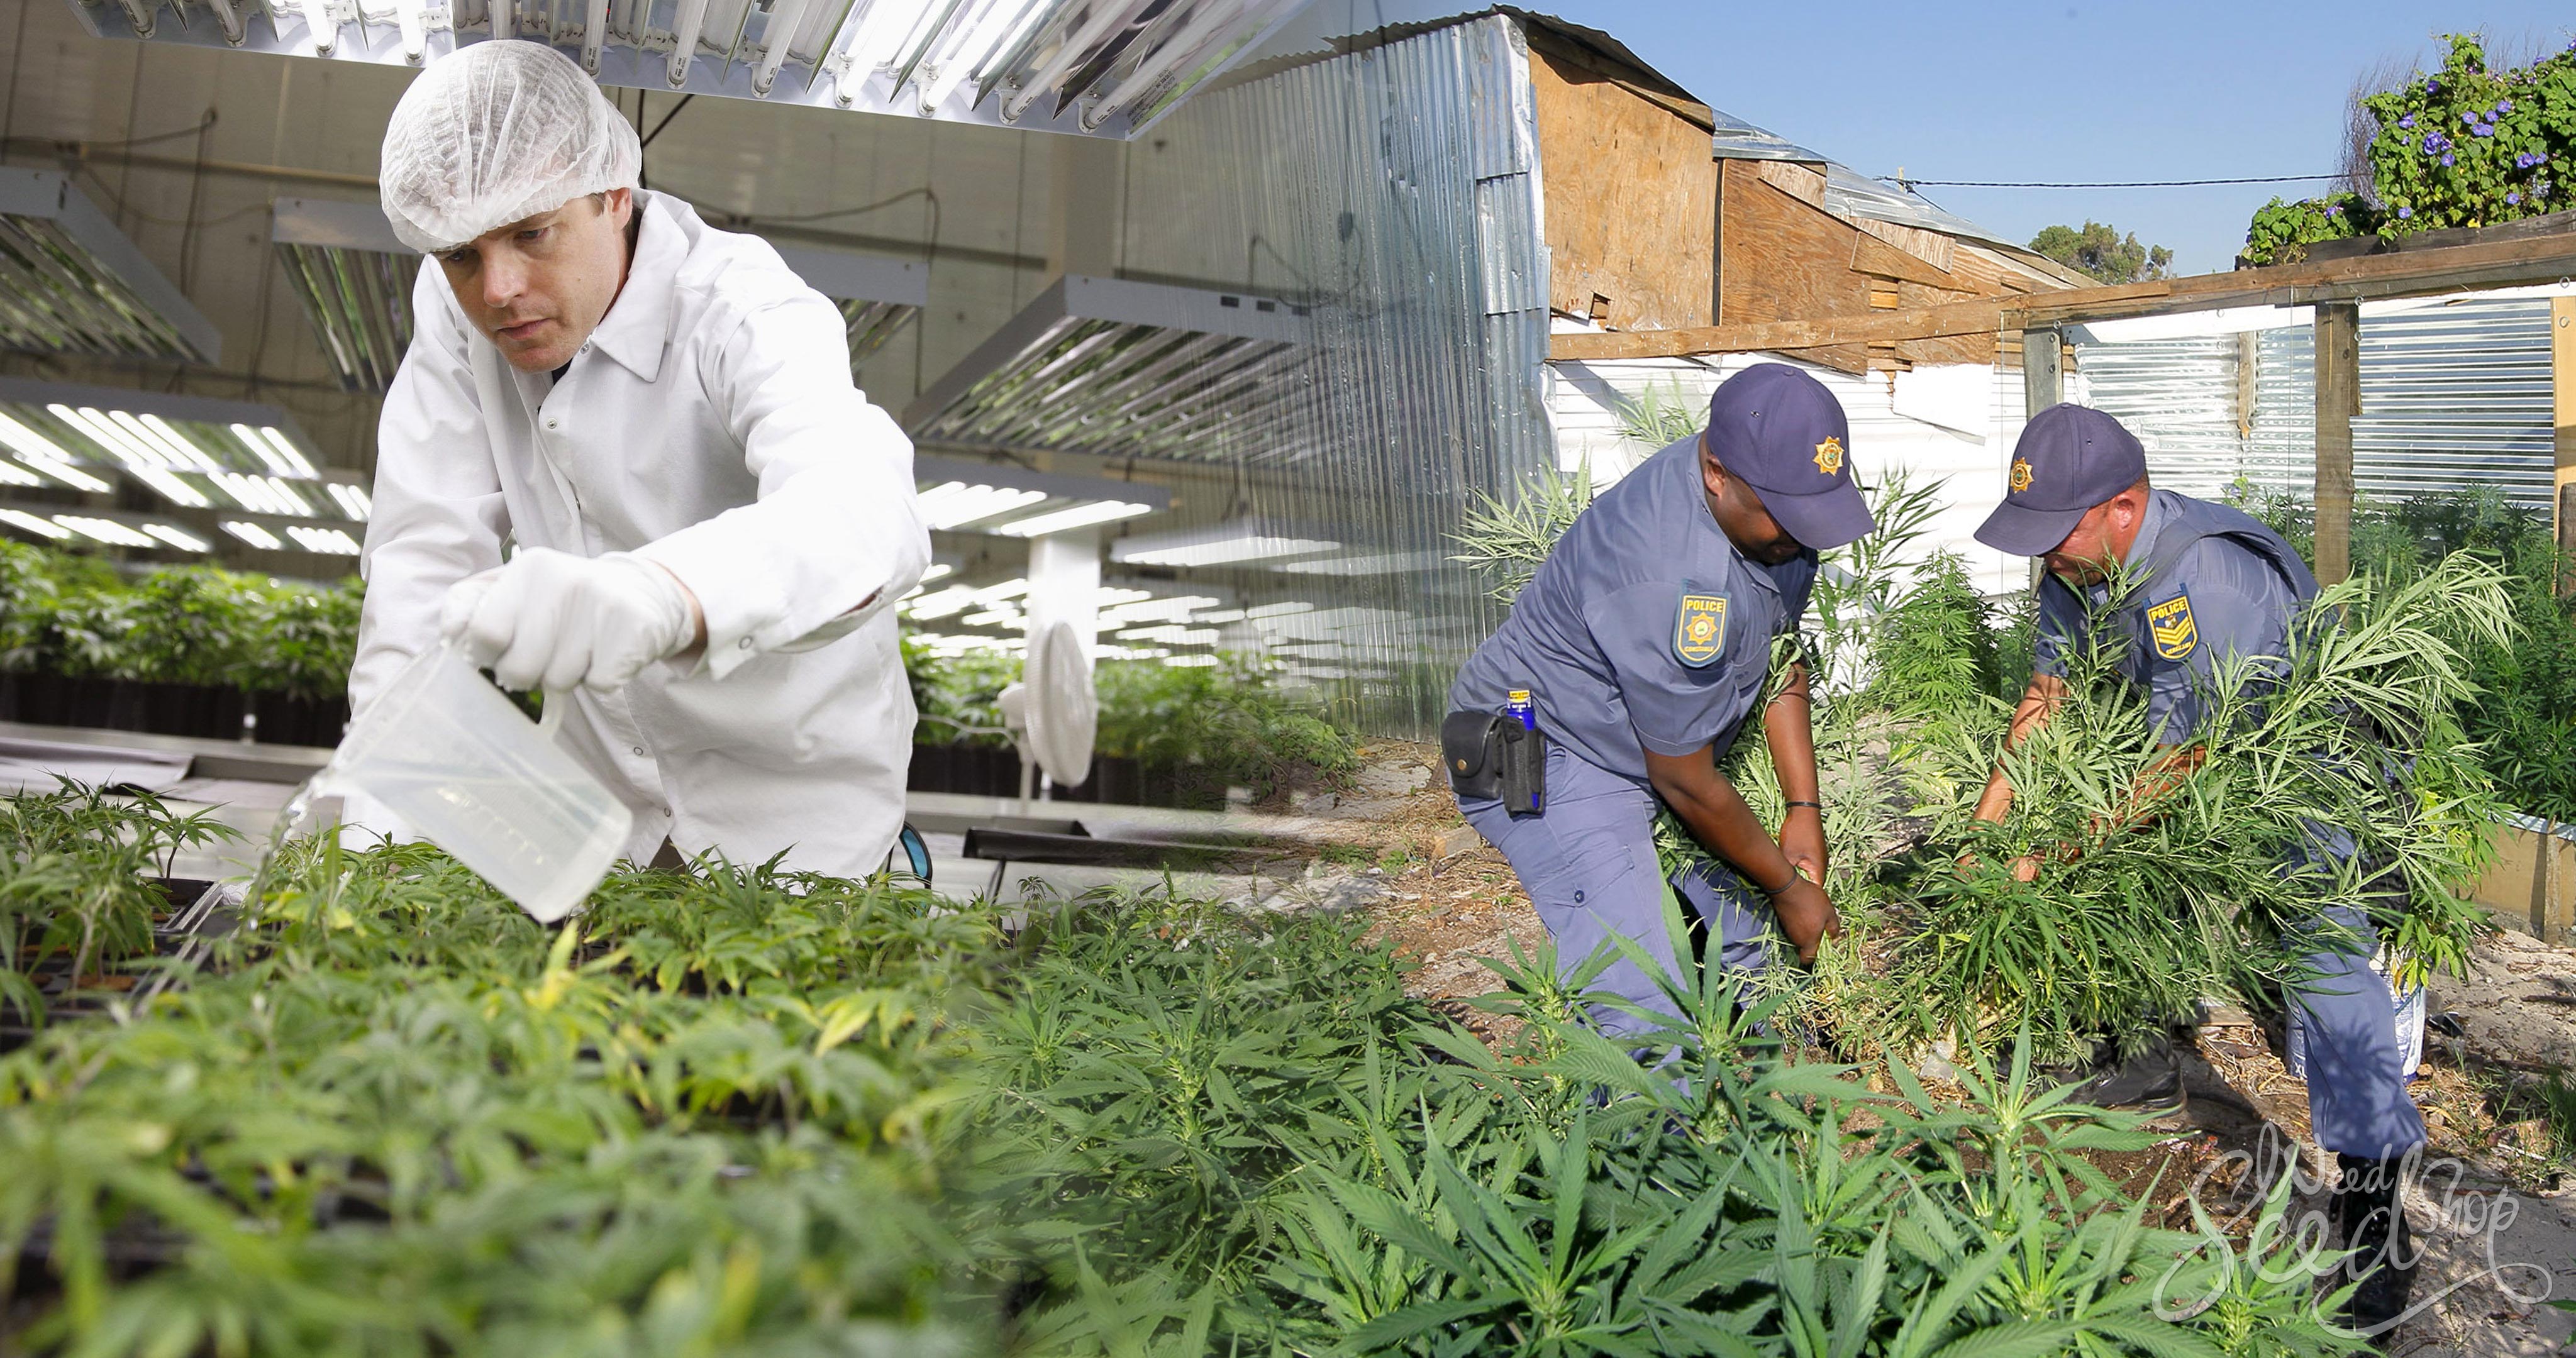 Le rapport entre marché noir et marché légal - WeedSeedShop